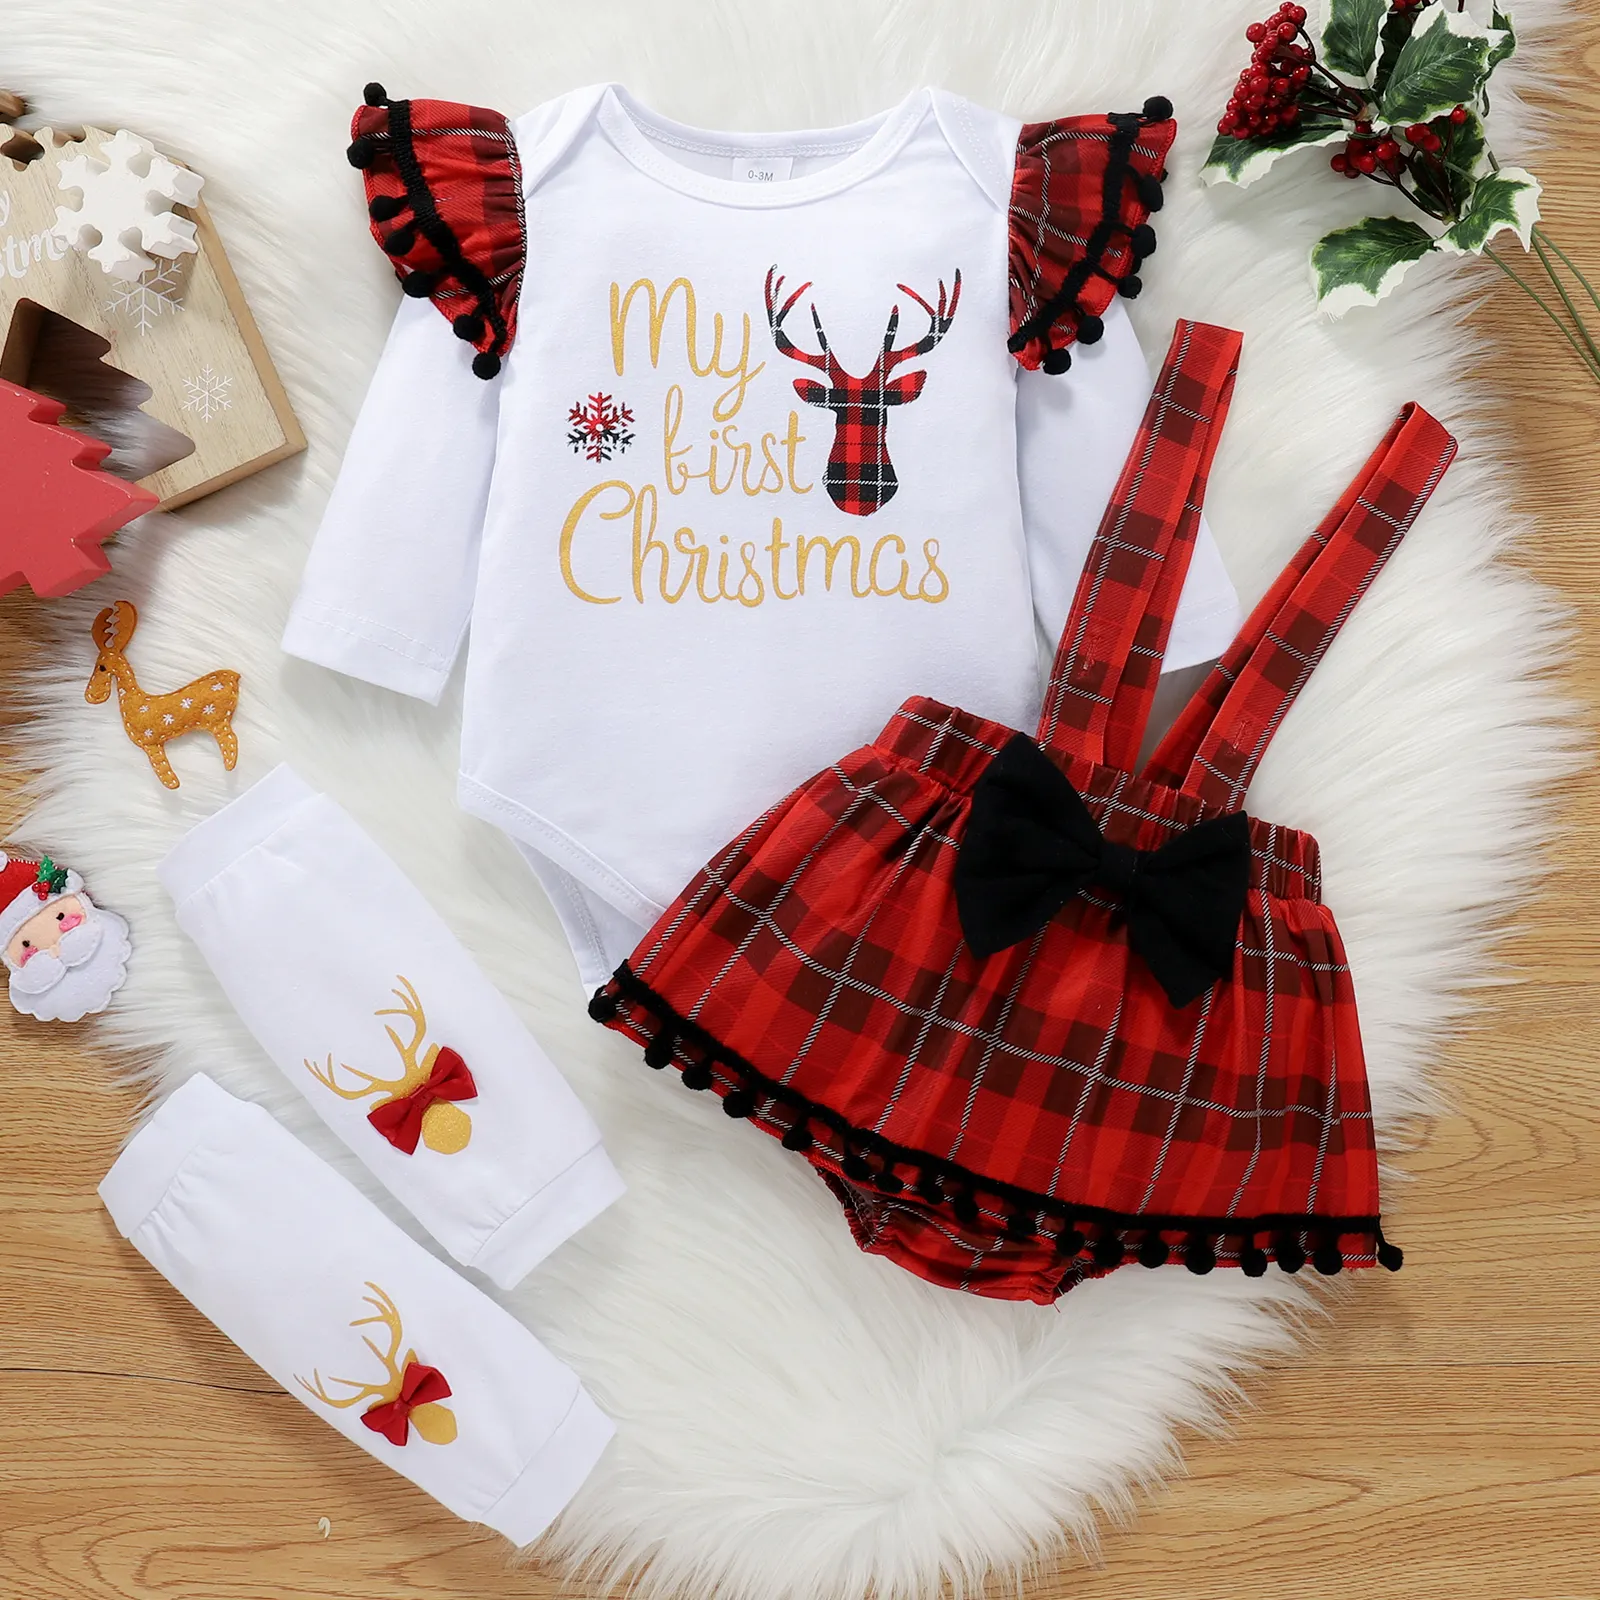 Noel yenidoğan bebek kız 3 adet Romper tulum üst giysi parti kıyafet